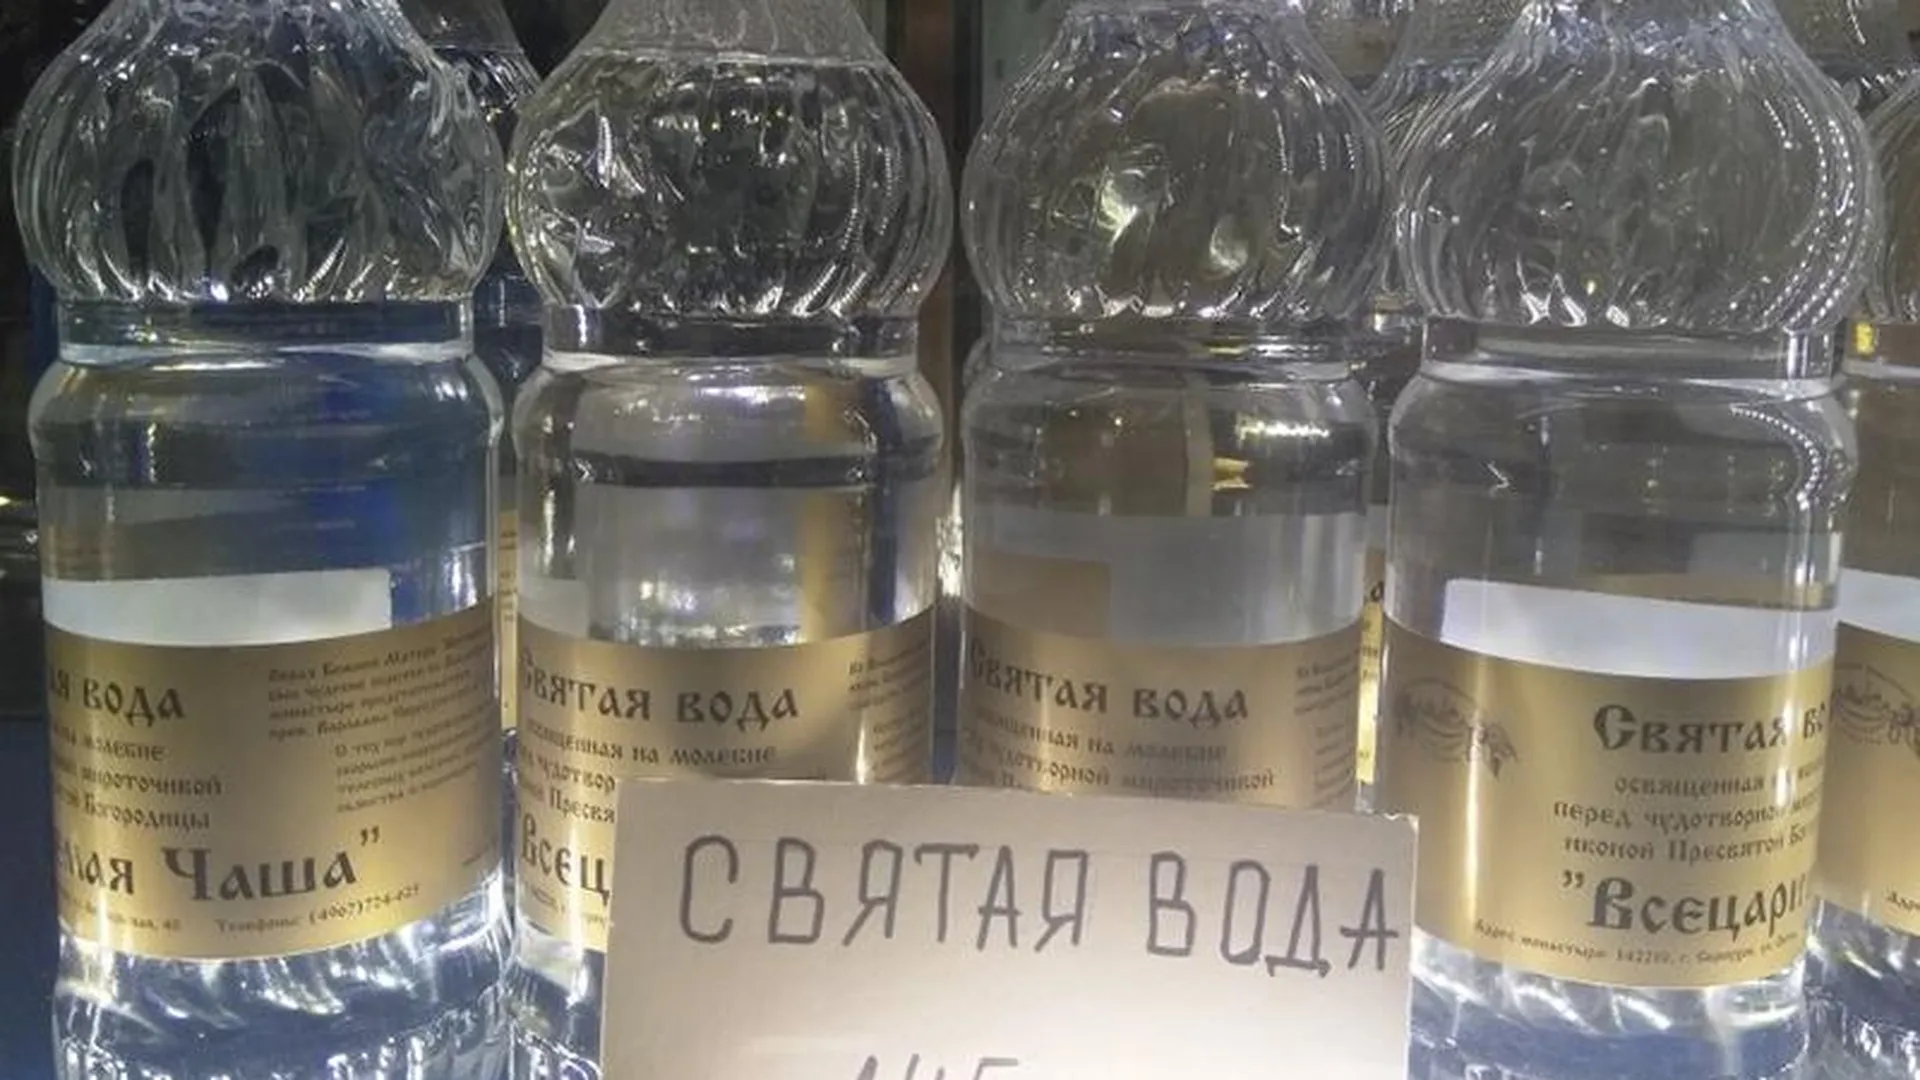 Святую воду из Серпухова продают в Челябинске по 145 рублей за литр